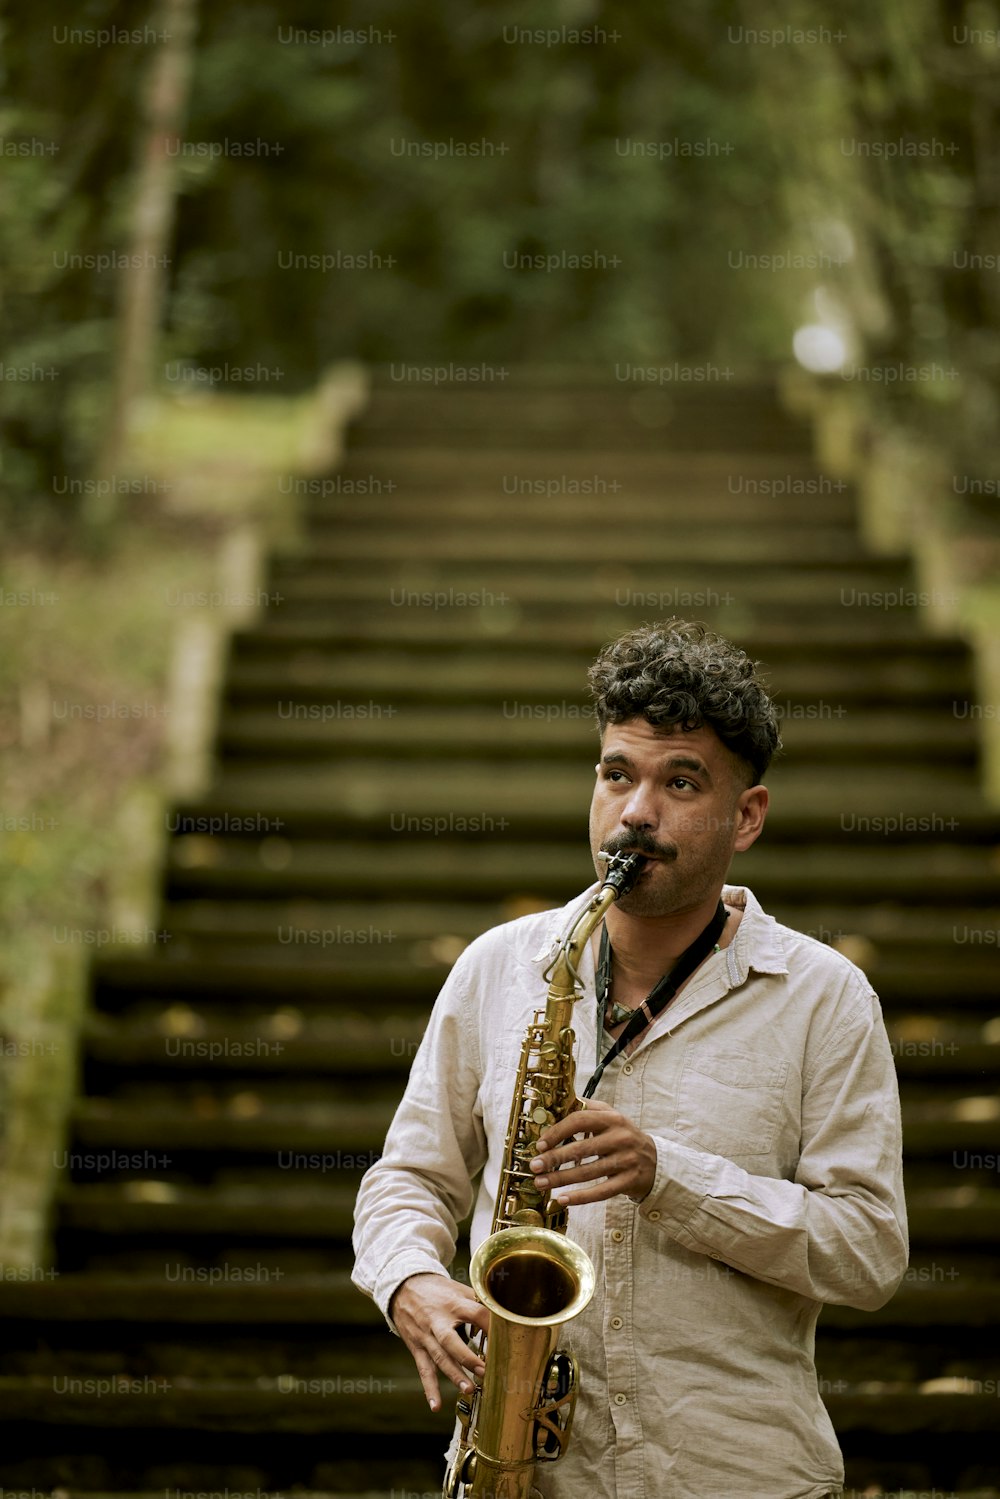 Un homme jouant du saxophone devant un escalier